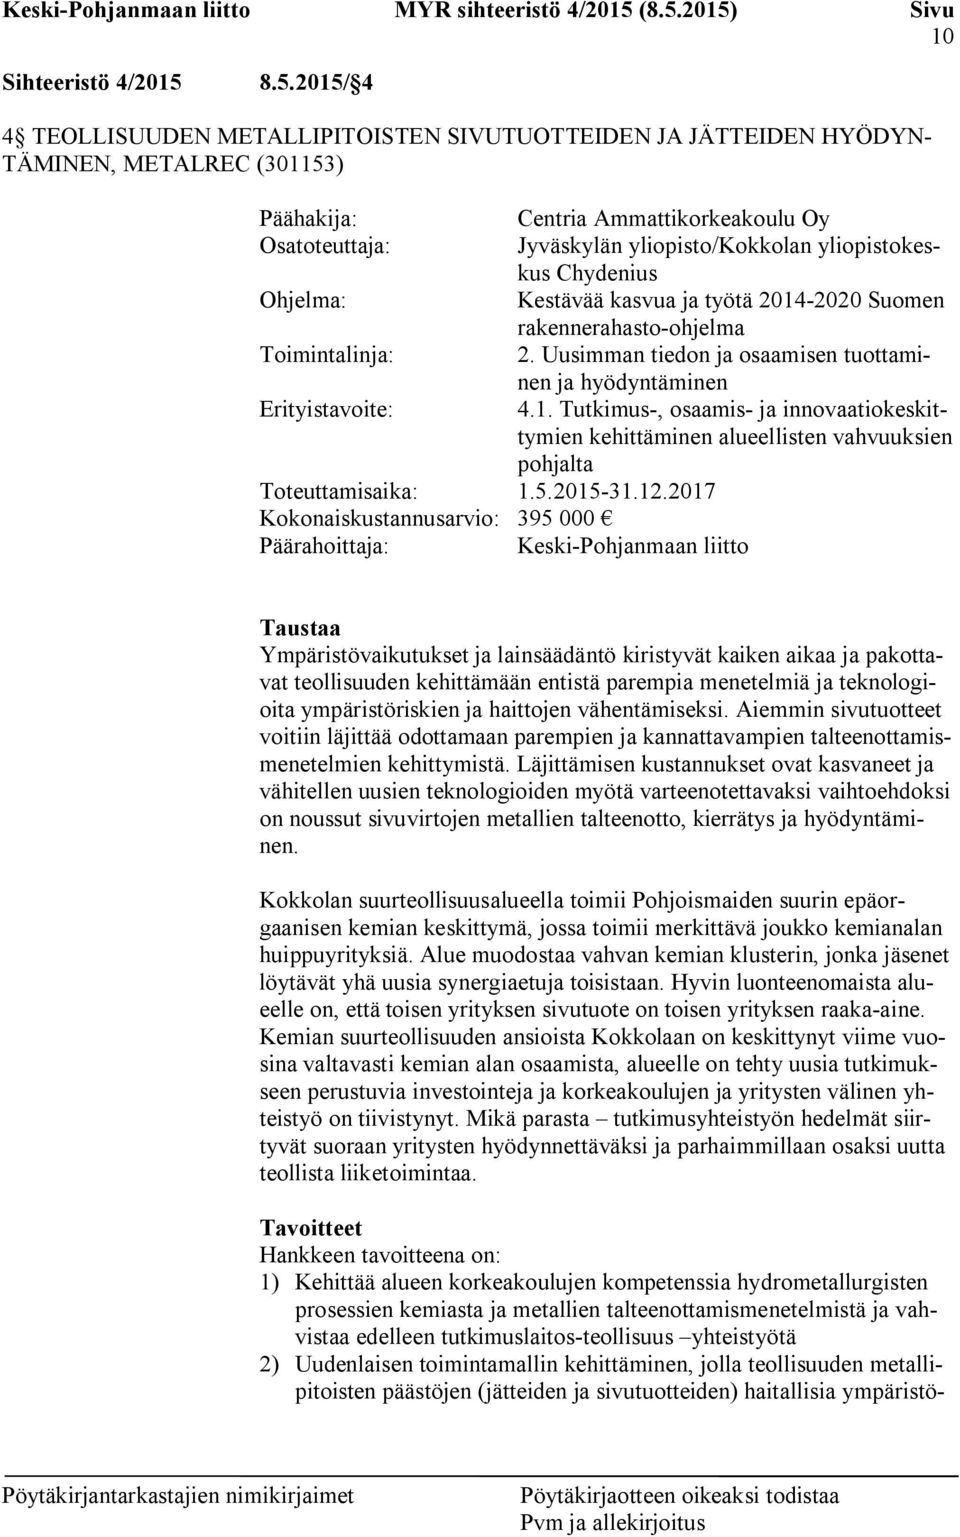 yliopistokeskus Chydenius Ohjelma: Kestävää kasvua ja työtä 2014-2020 Suomen rakennerahasto-ohjelma Toimintalinja: 2. Uusimman tiedon ja osaamisen tuottaminen ja hyödyntäminen Erityistavoite: 4.1. Tutkimus-, osaamis- ja innovaatiokeskittymien kehittäminen alueellisten vahvuuksien pohjalta Toteuttamisaika: 1.